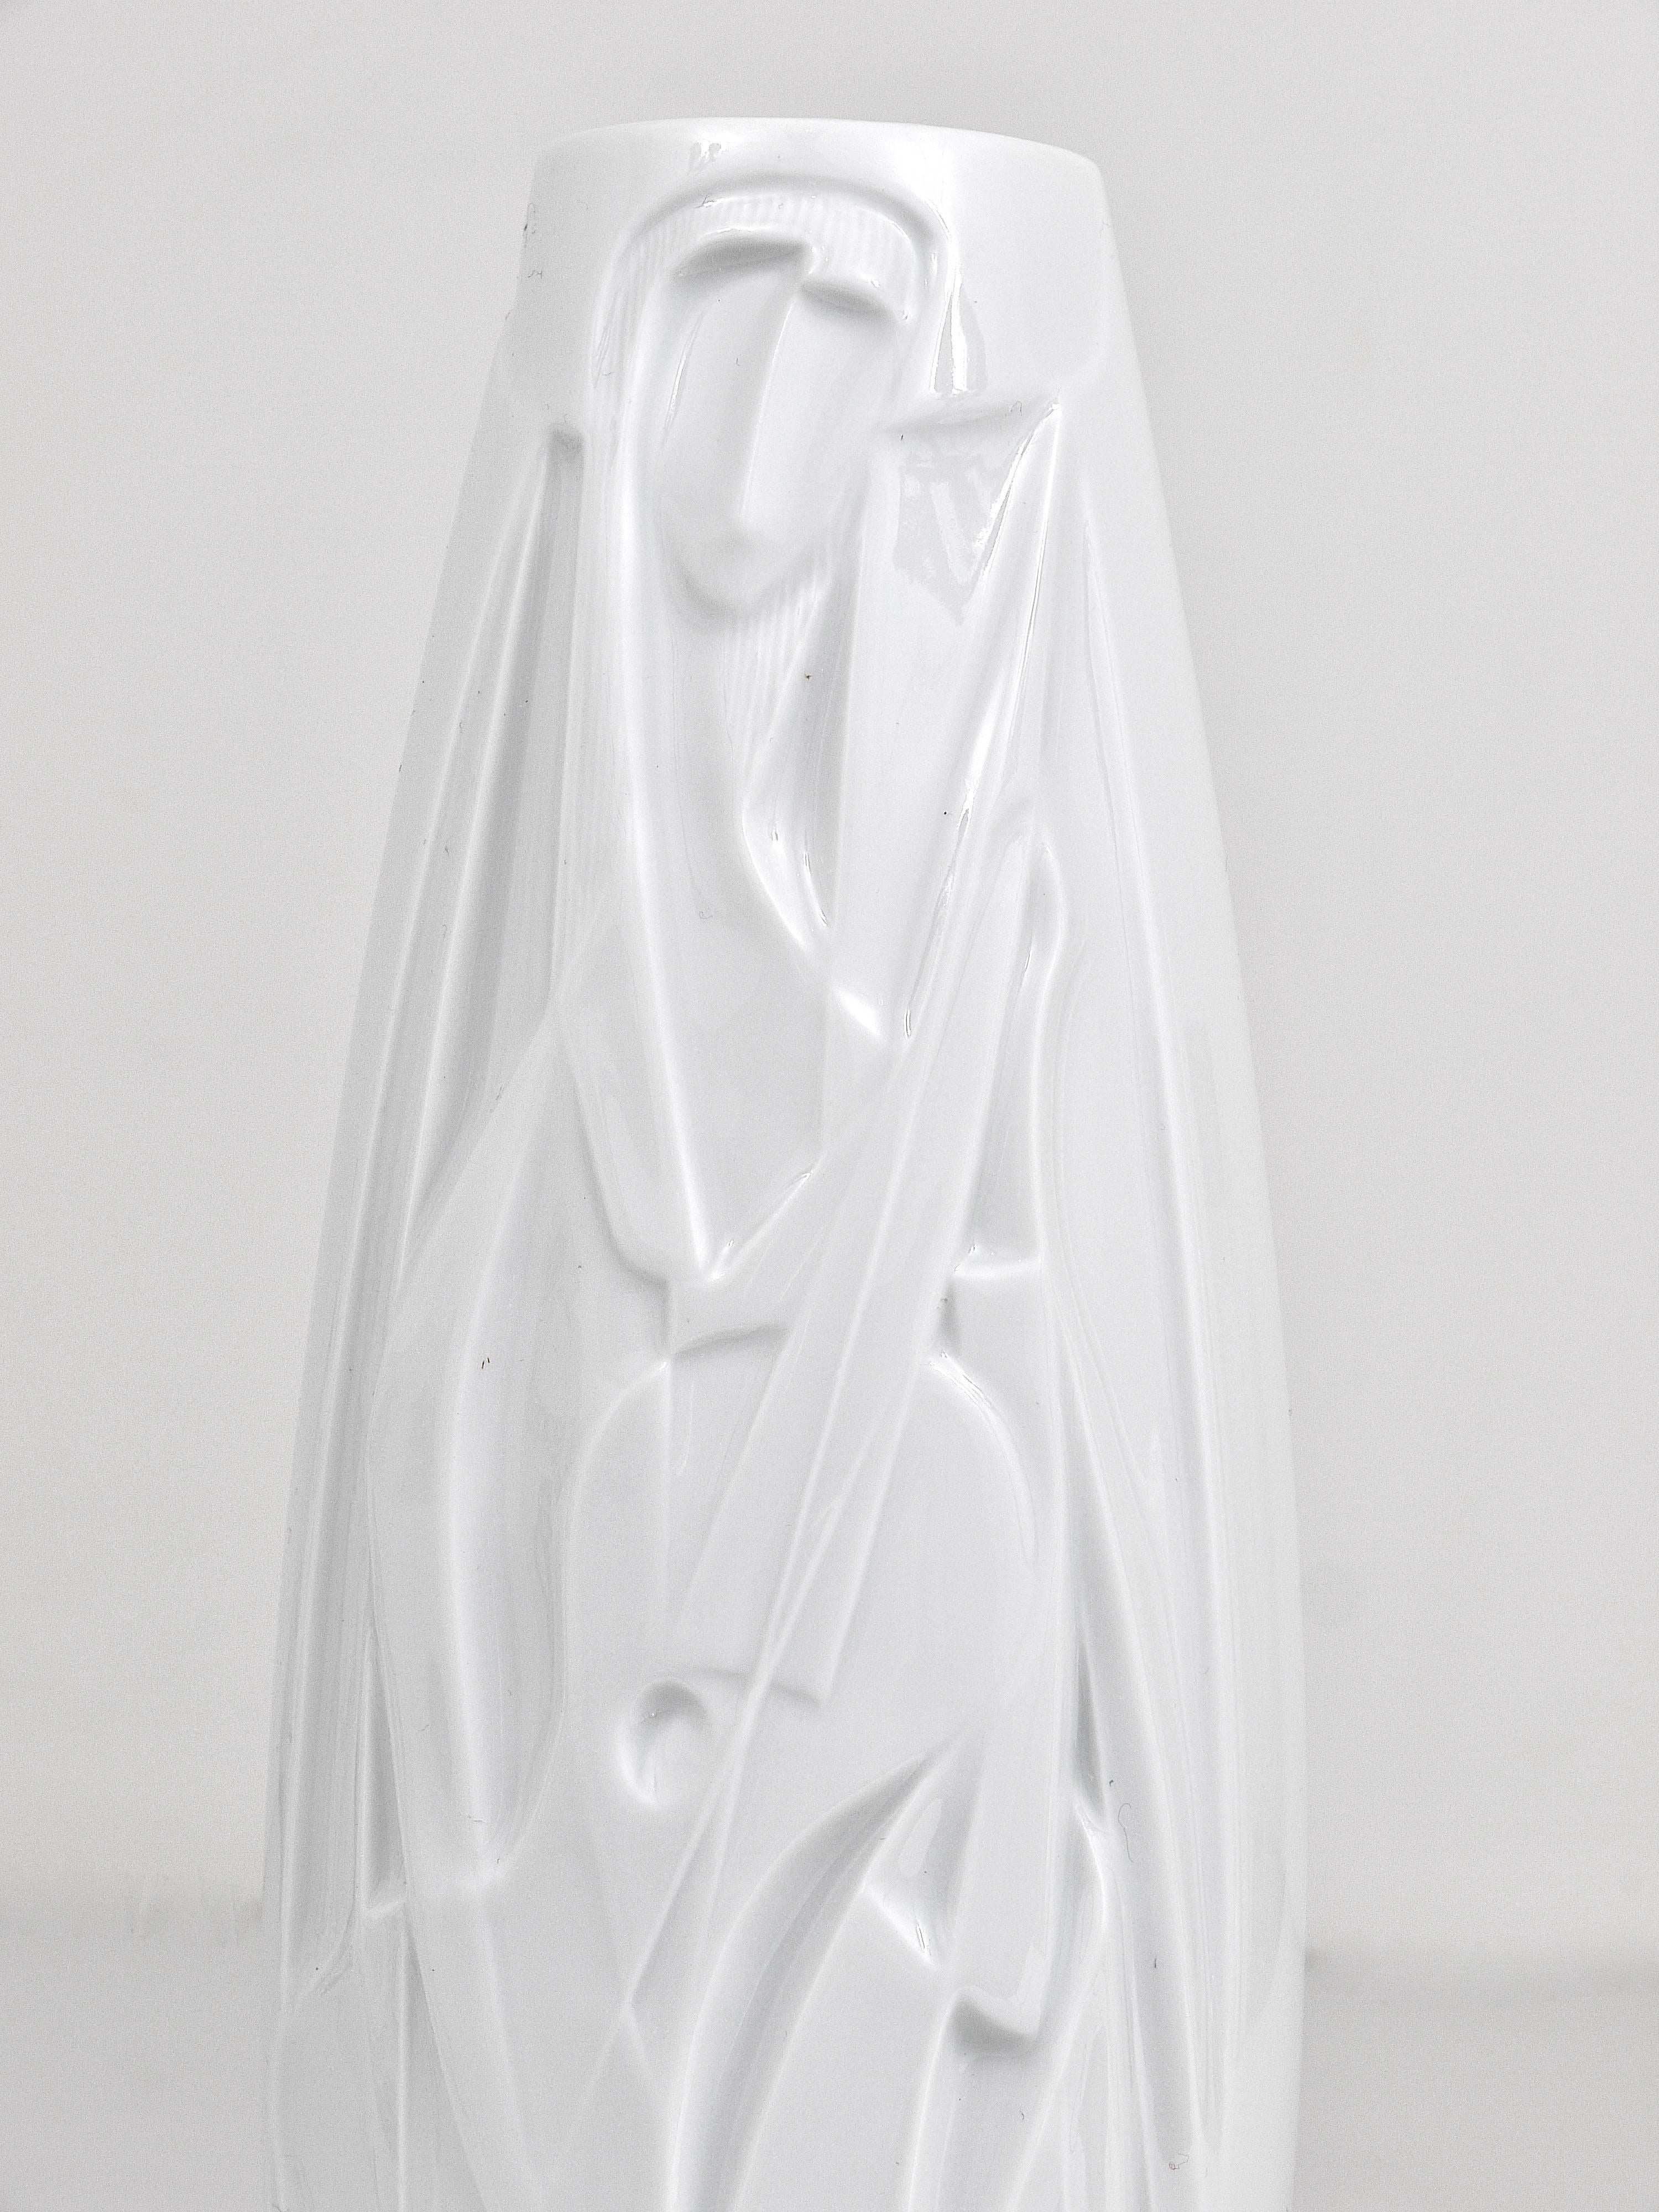 Porcellana Cuno Fischer Rosenthal Studio-Linie Vaso in porcellana Op Art a rilievo bianco, anni '60 in vendita